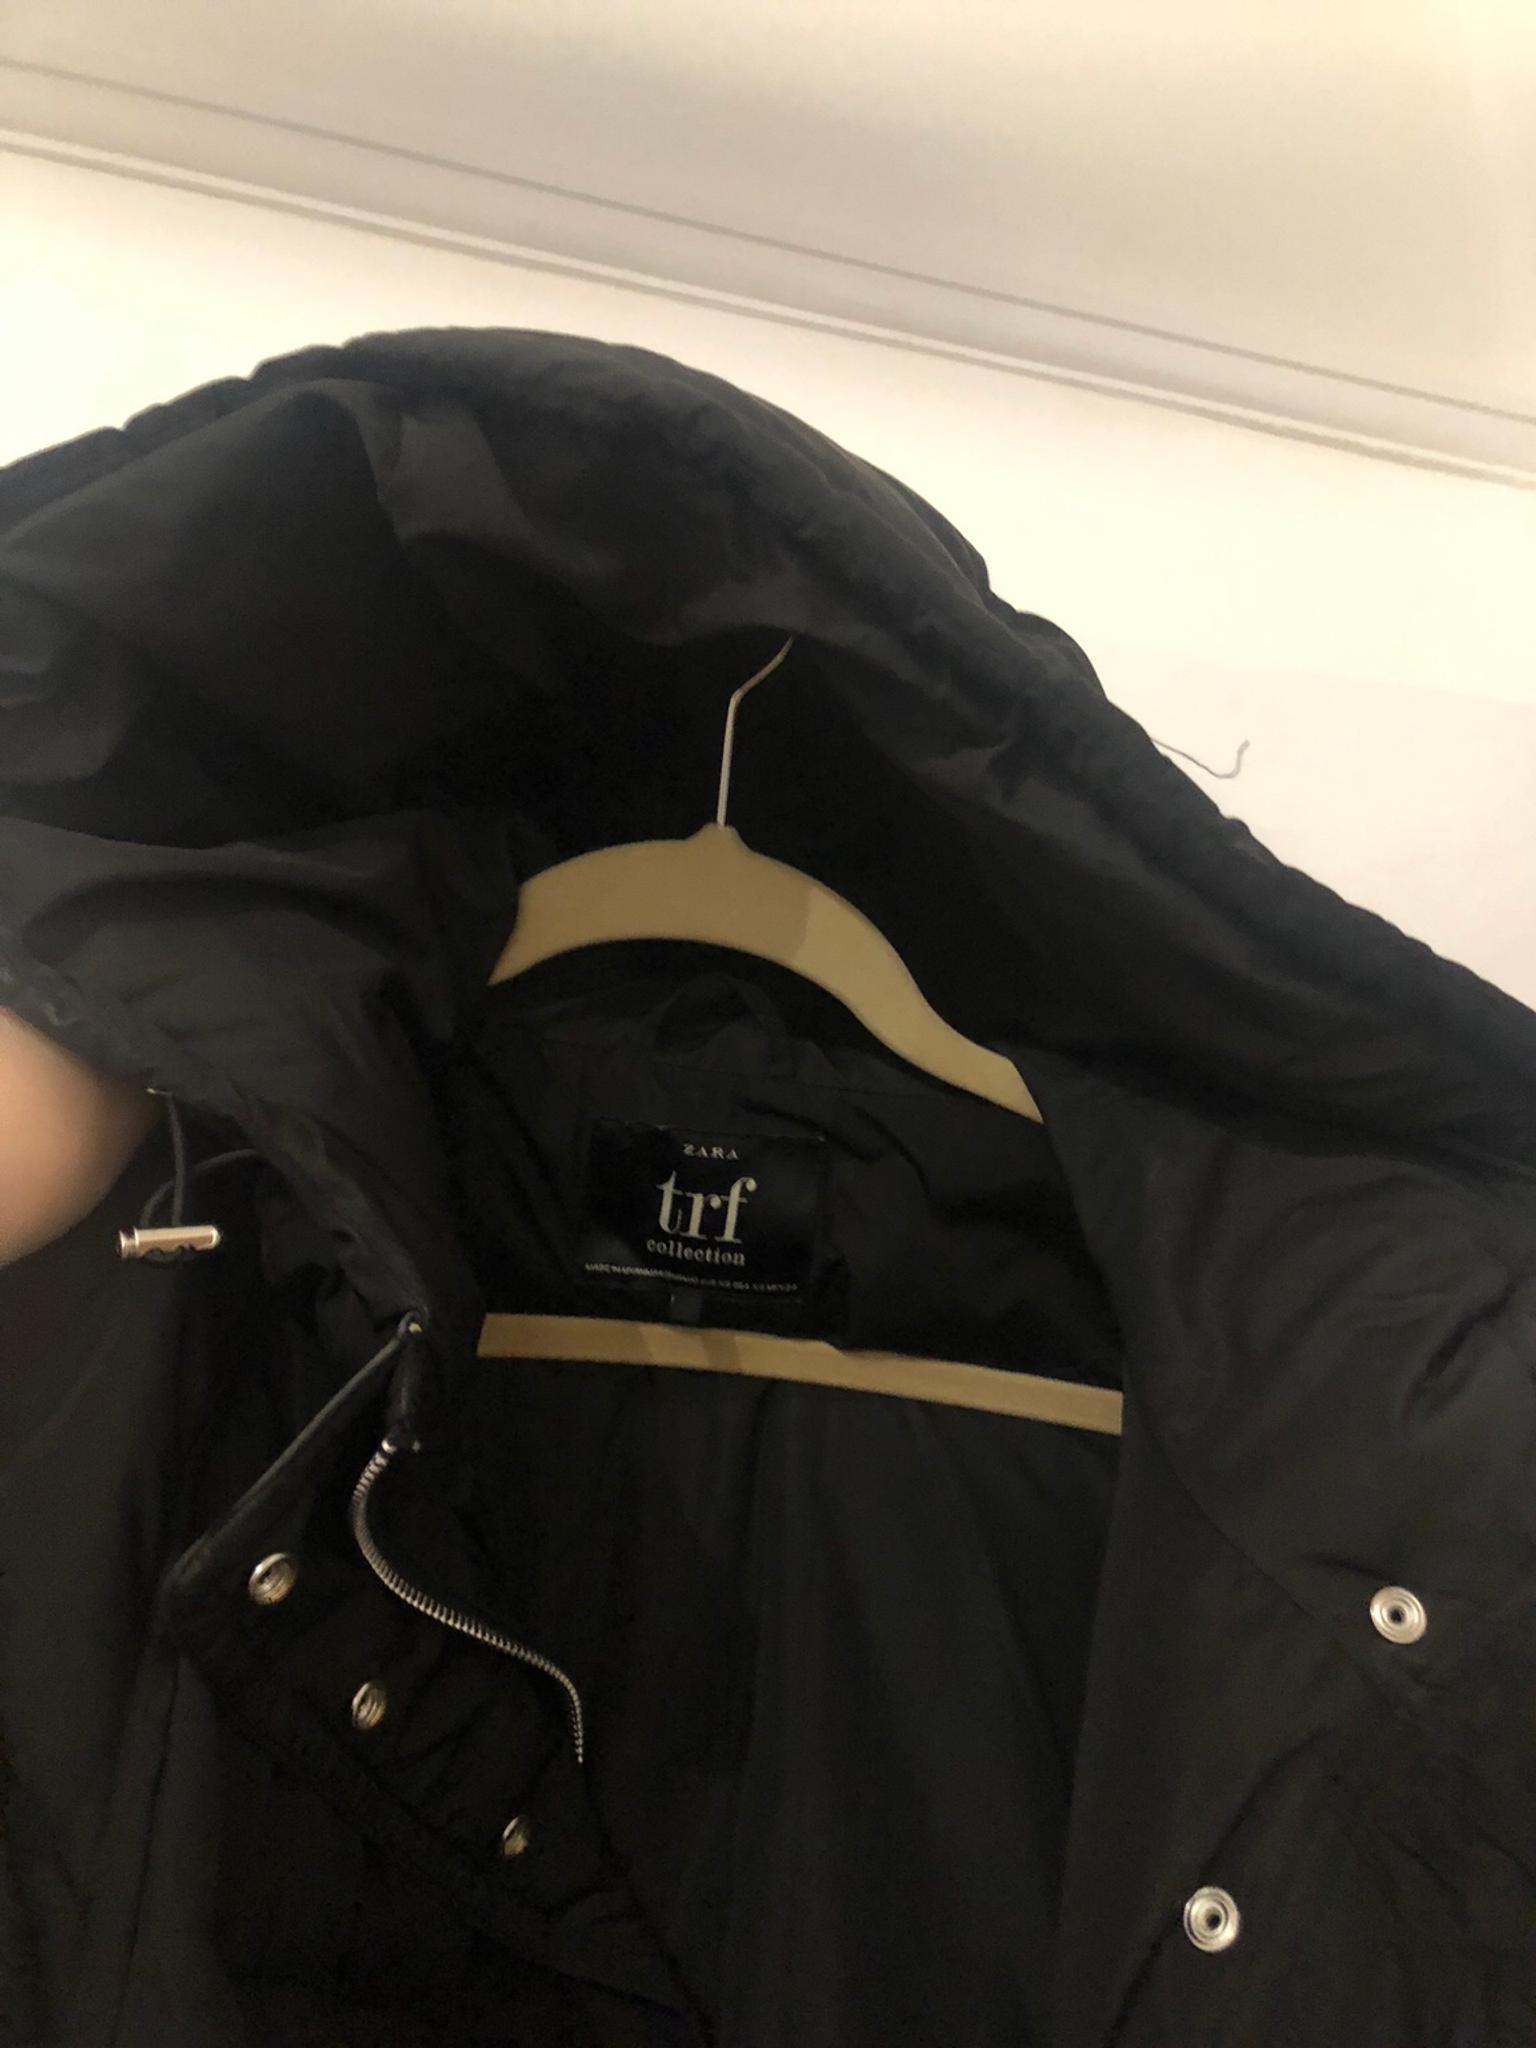 zara trf collection jacket